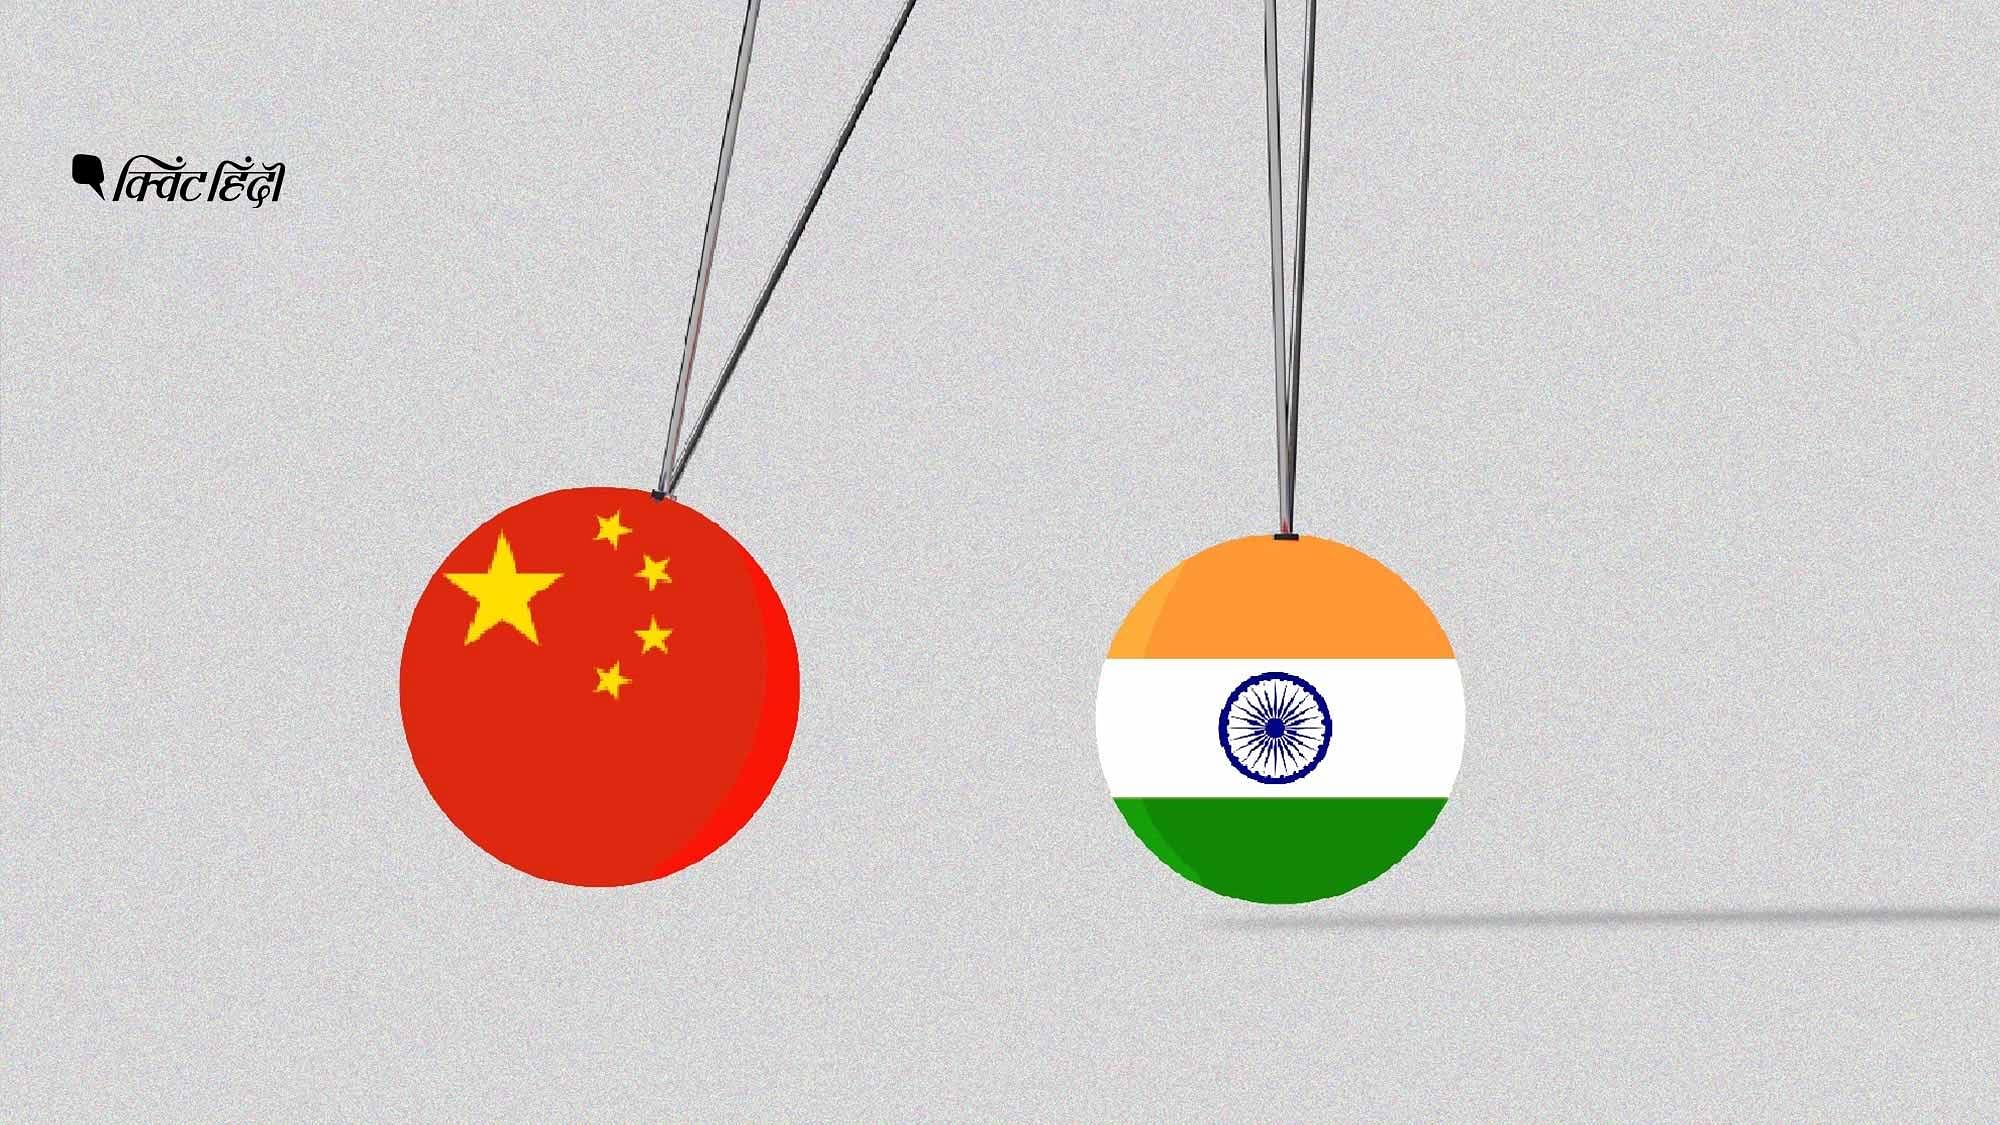 भारत और चीन के बीच तनाव अभी भी जारी